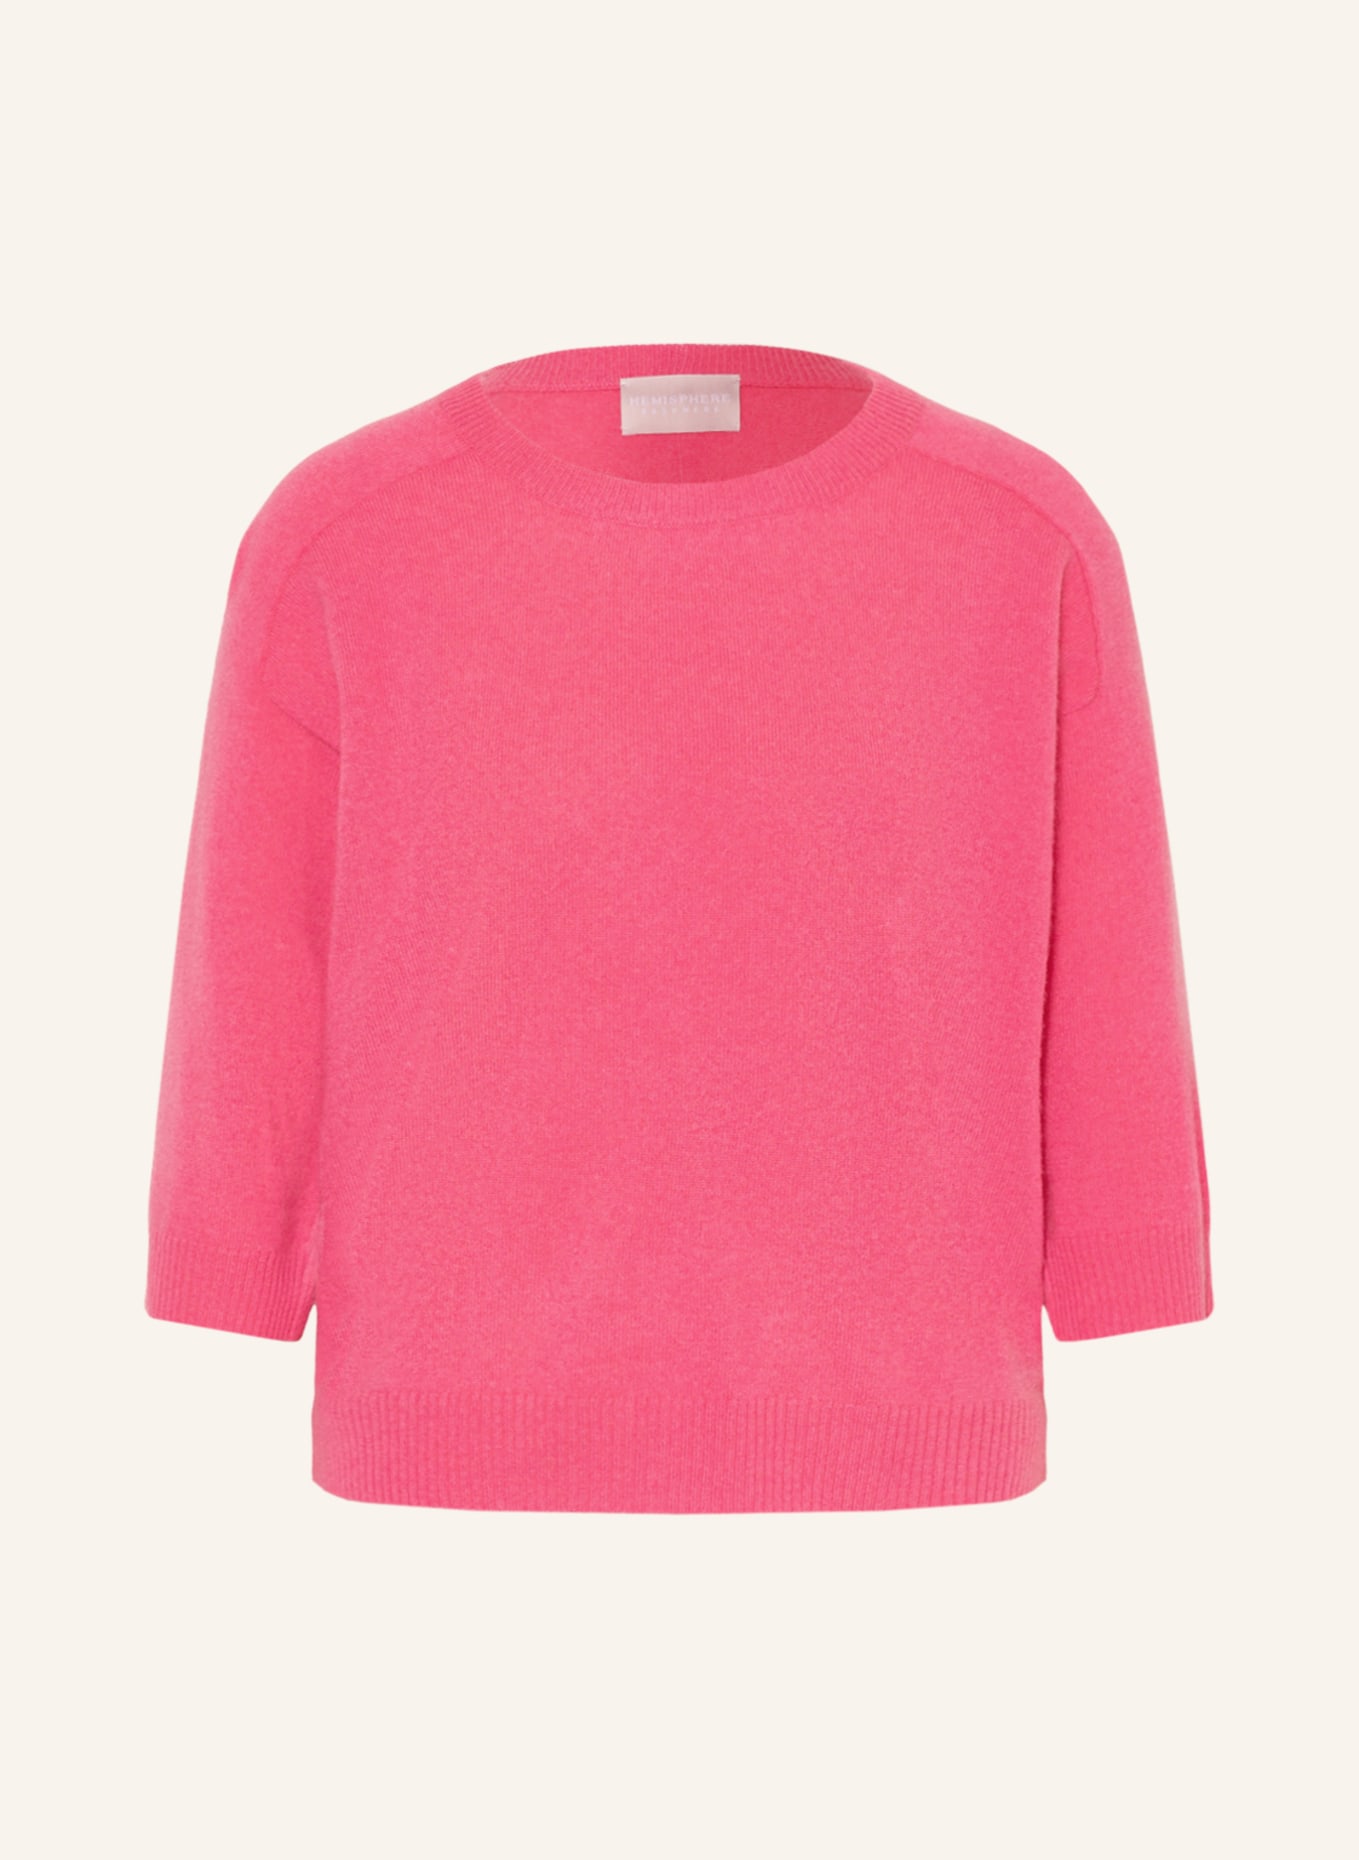 HEMISPHERE Cashmere-Pullover mit 3/4-Arm, Farbe: PINK (Bild 1)